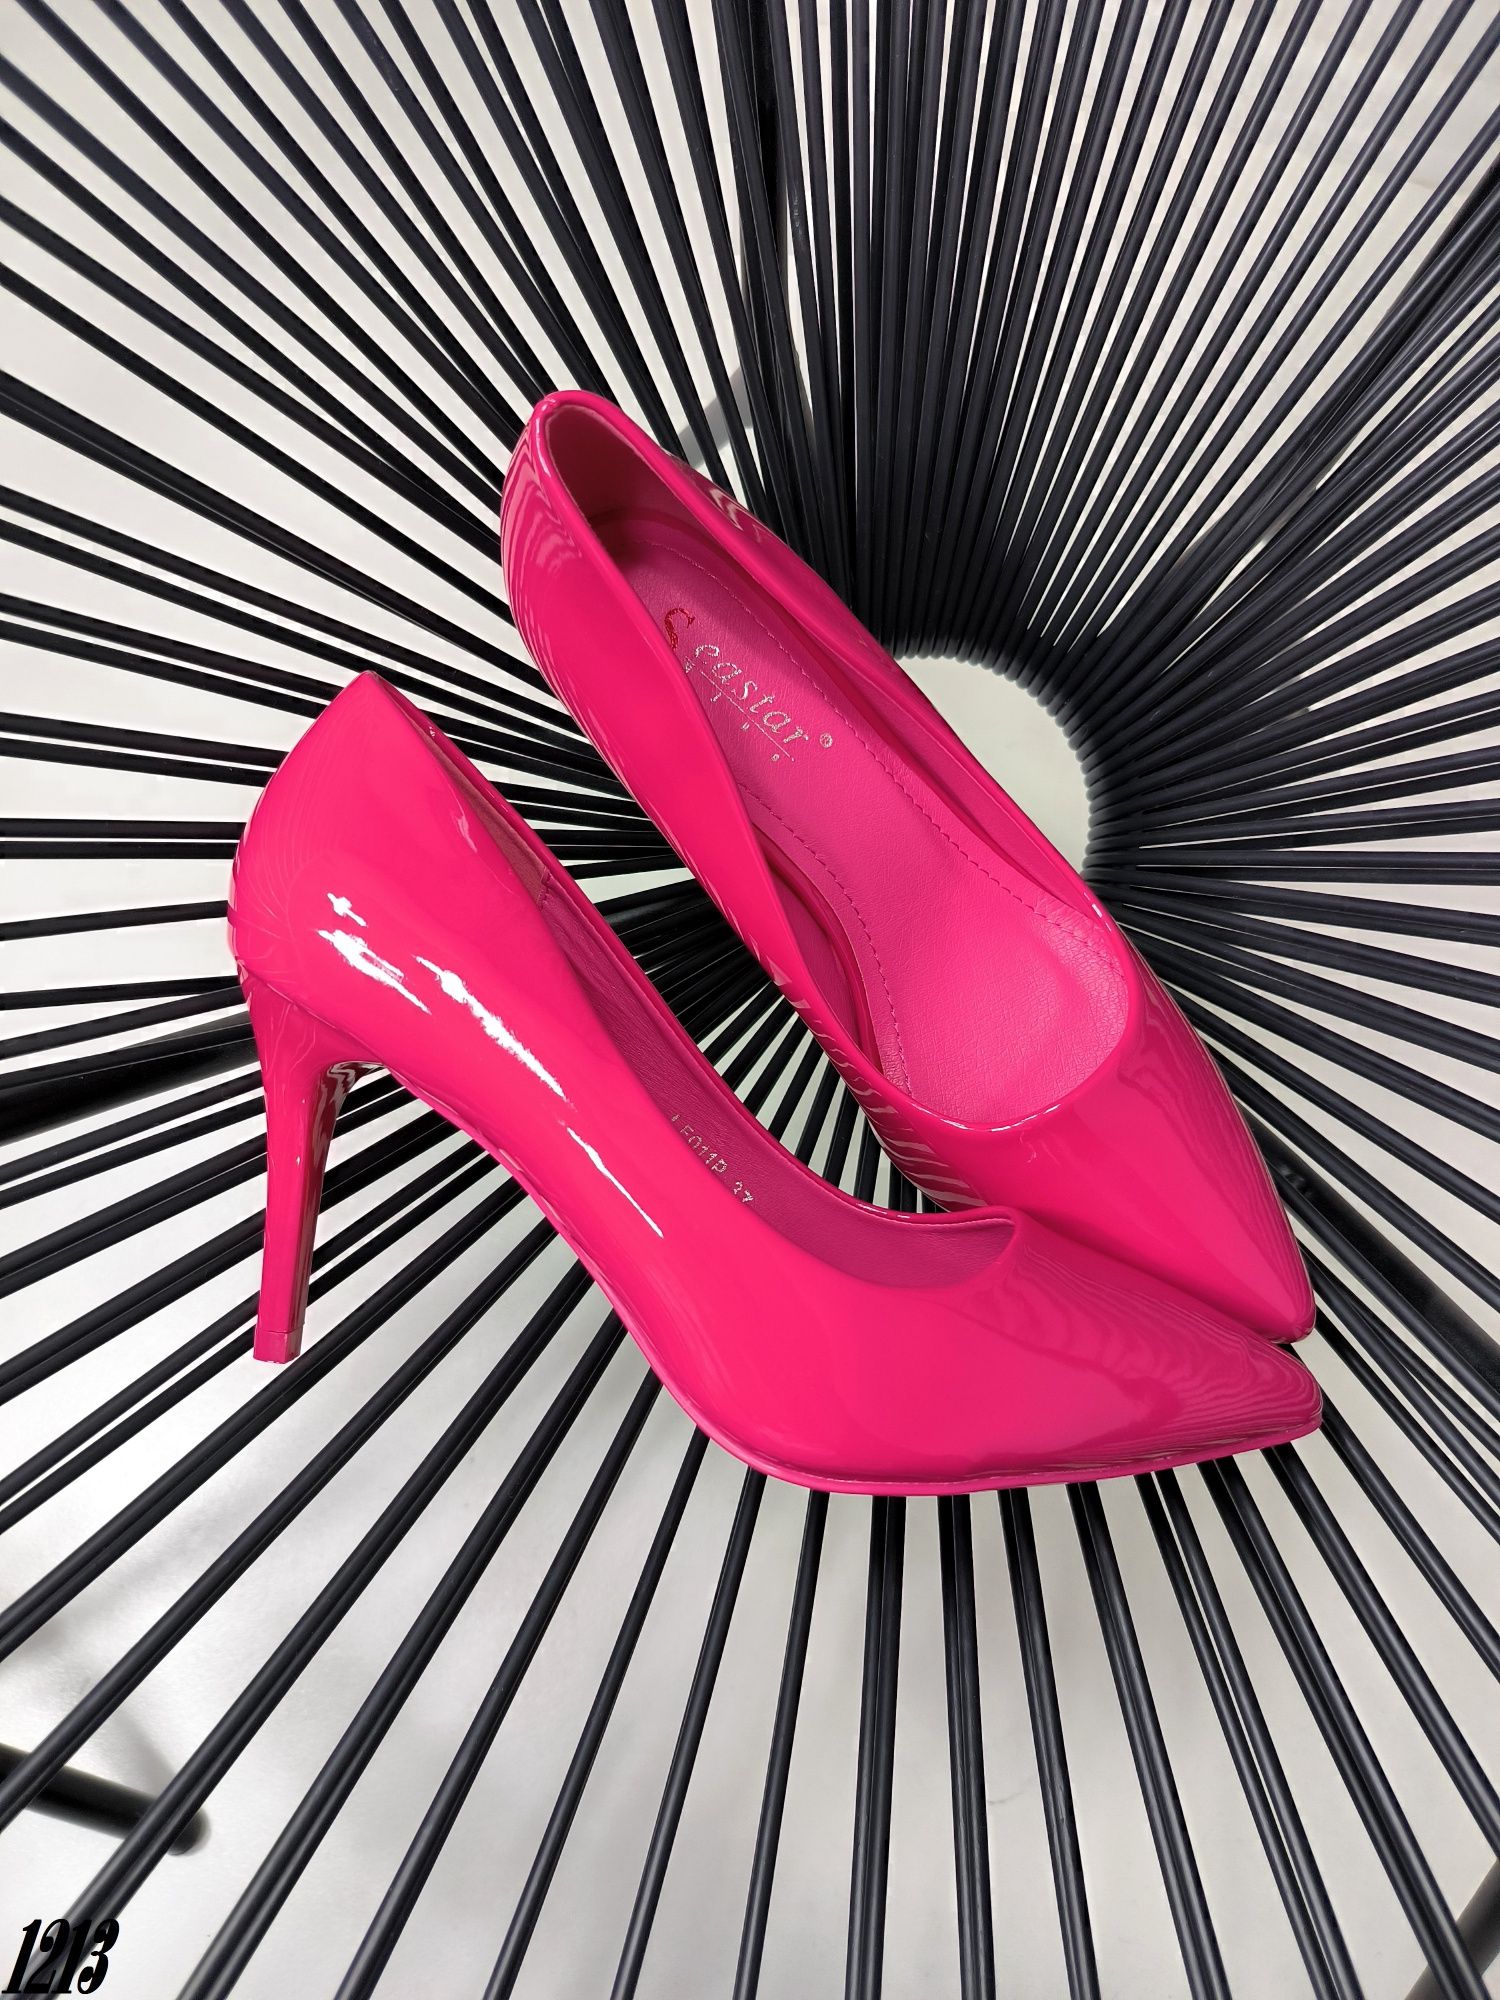 Лодочки рожеві фуксія туфлі жіночі лодочки розовые женские туфли